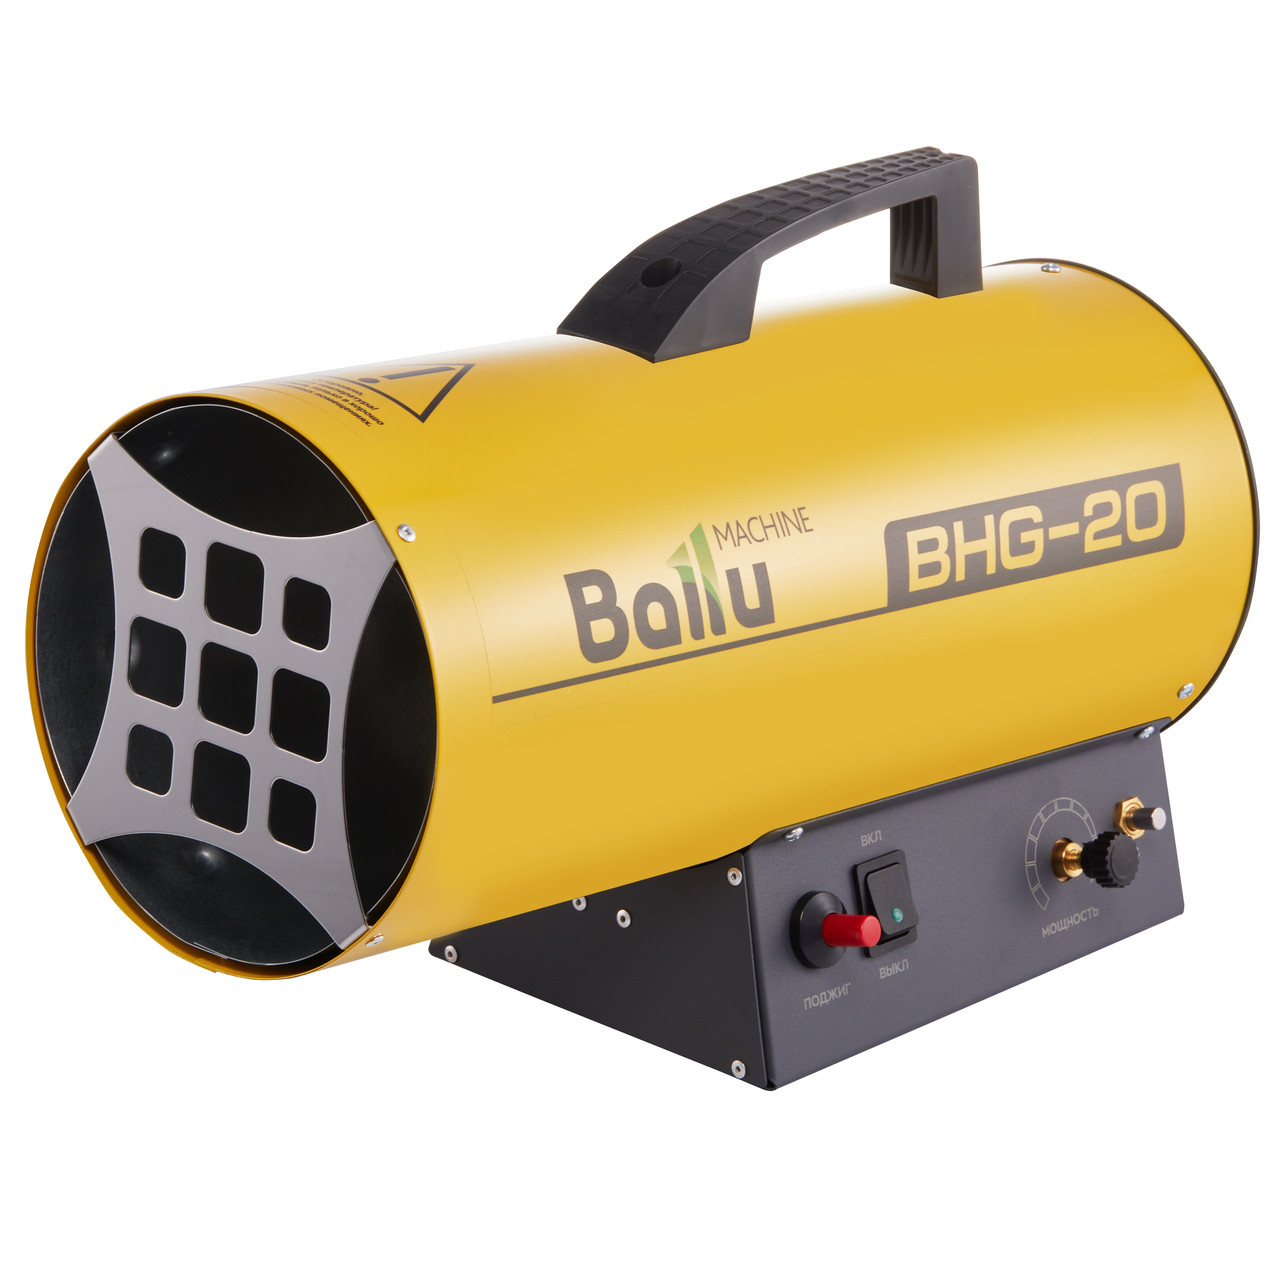 Газовый теплогенератор Ballu BHG-20, фото 1